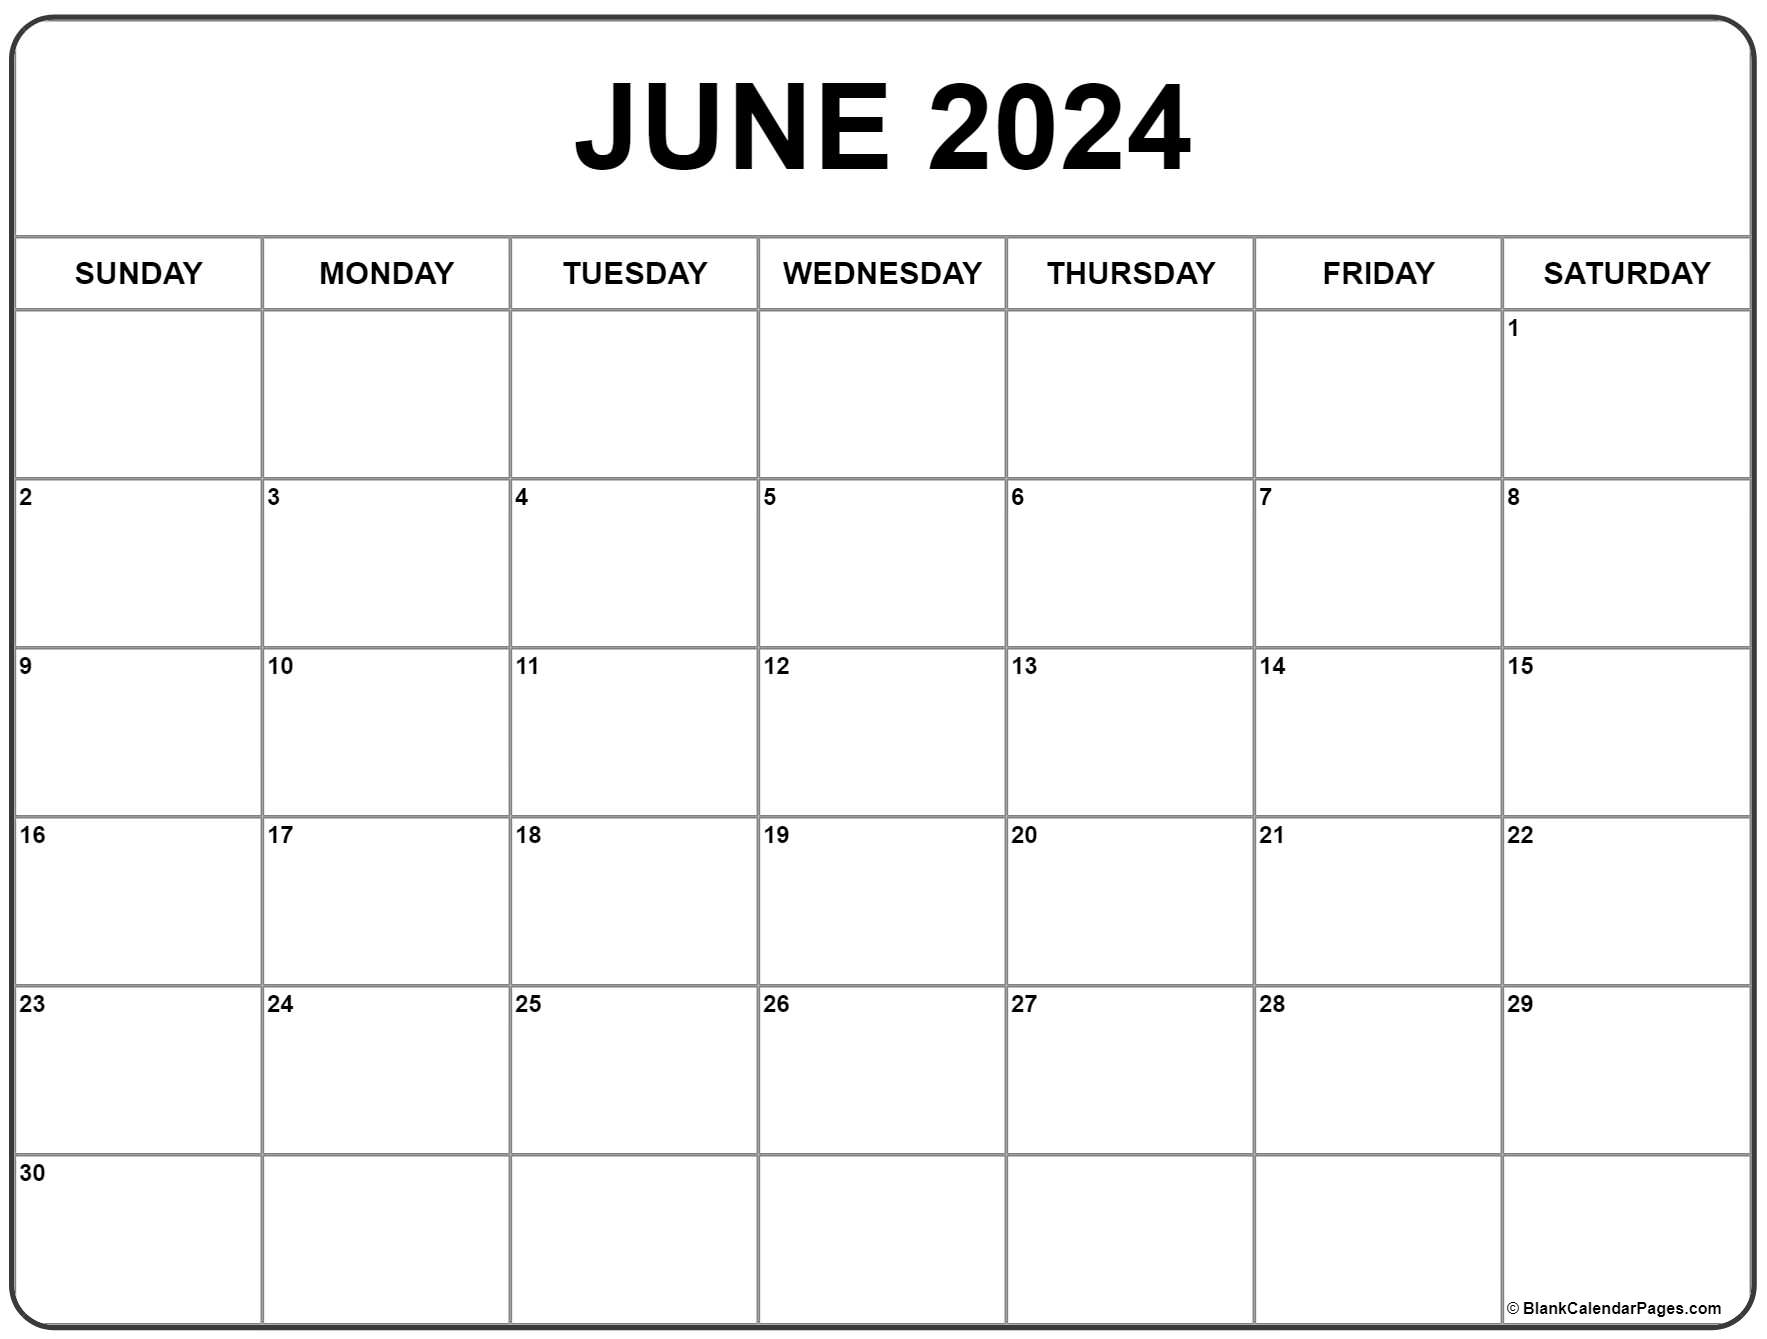 June 2022 Free Printable Calendar June 2022 Calendar | Free Printable Calendar Templates